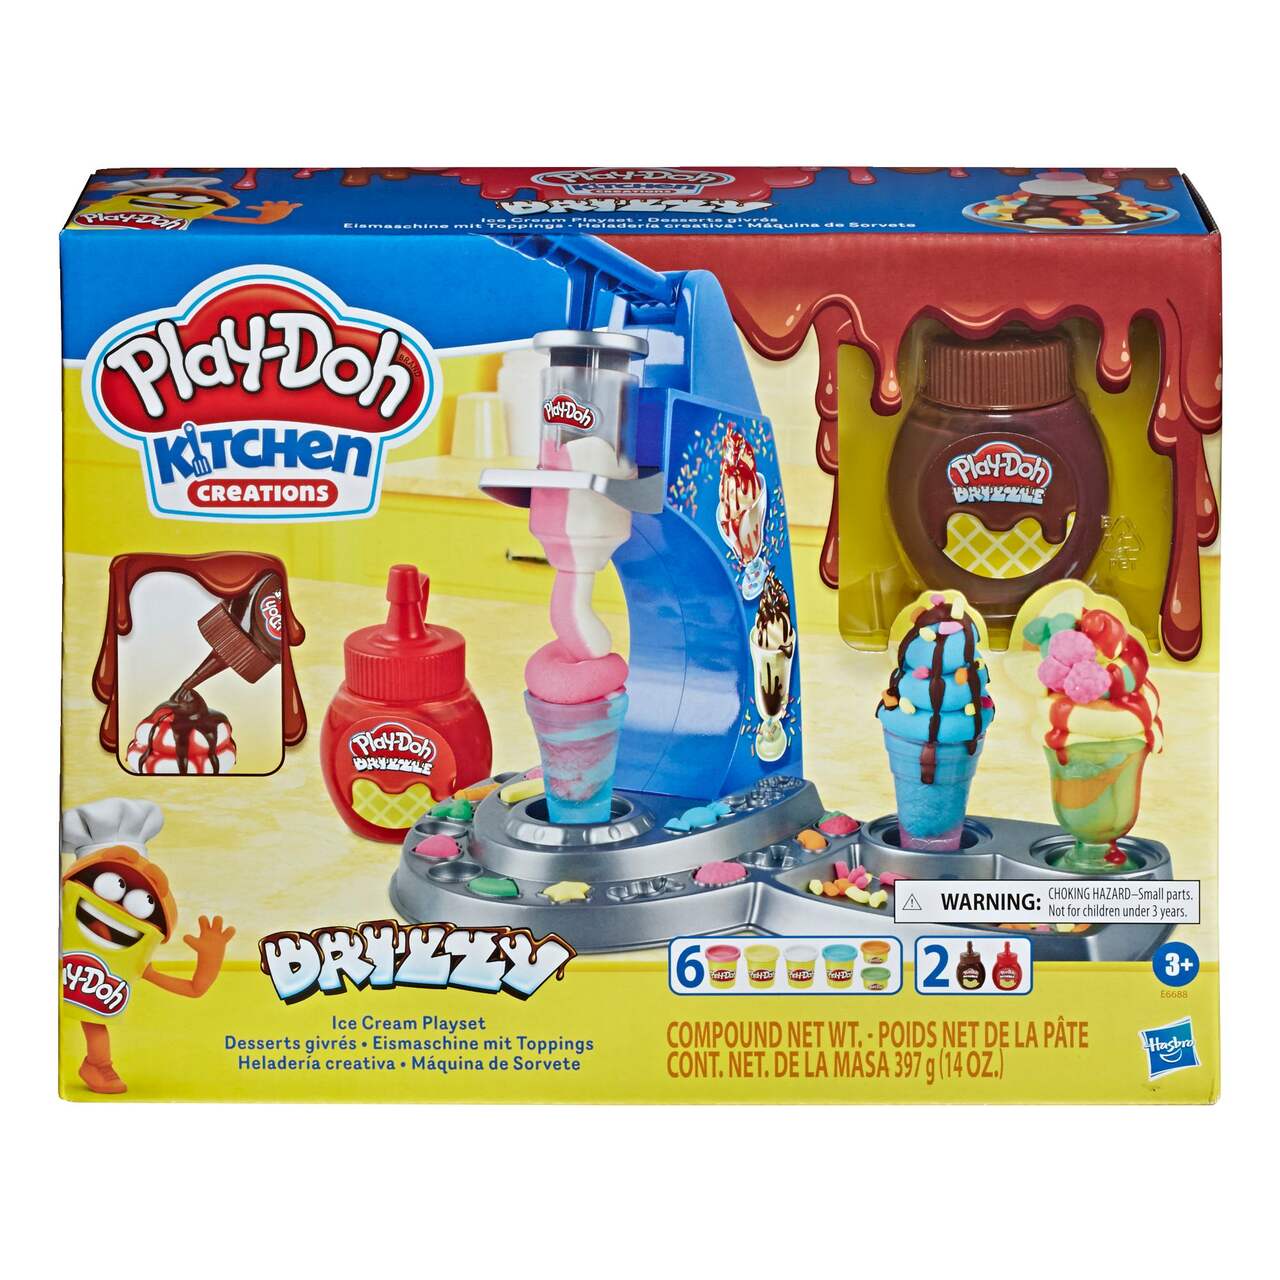 Play-Doh Sac surprise - 15 pots de pâte à modeler au meilleur prix sur